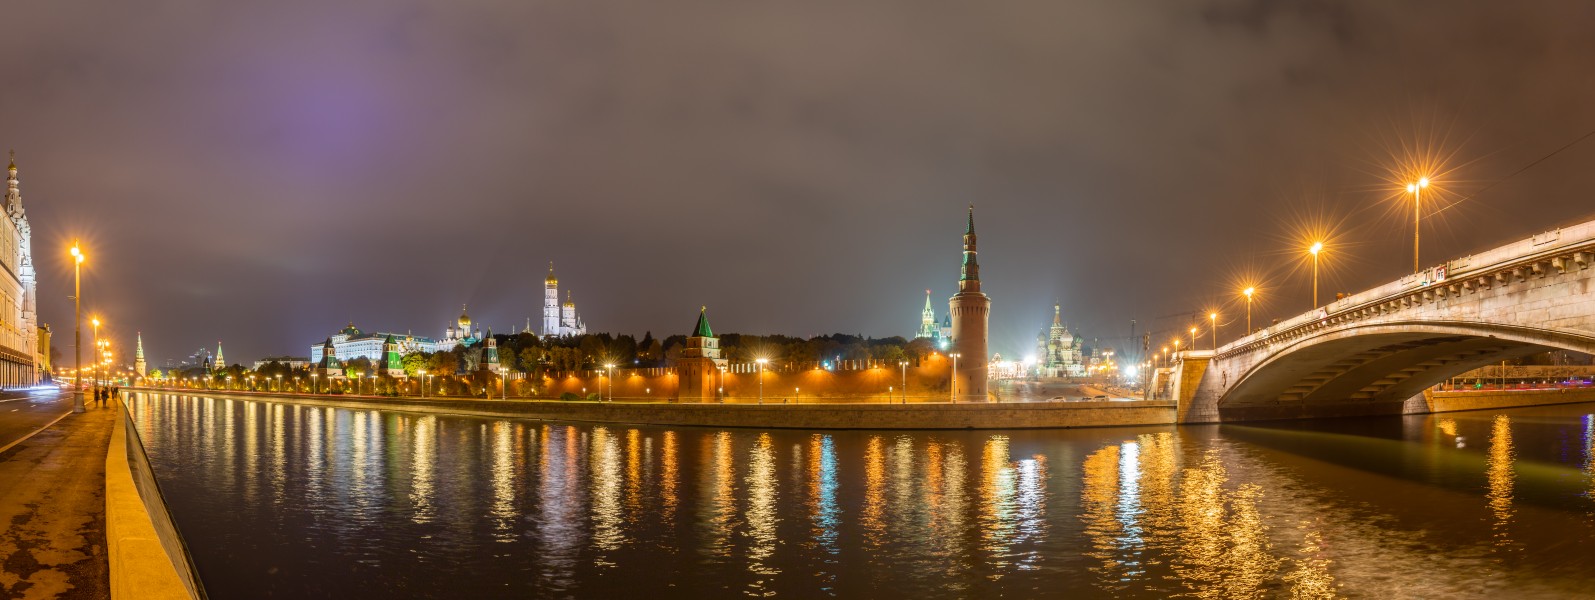 Kremlin y río Moscova, Moscú, Rusia, 2016-10-03, DD 22-27 HDR PAN